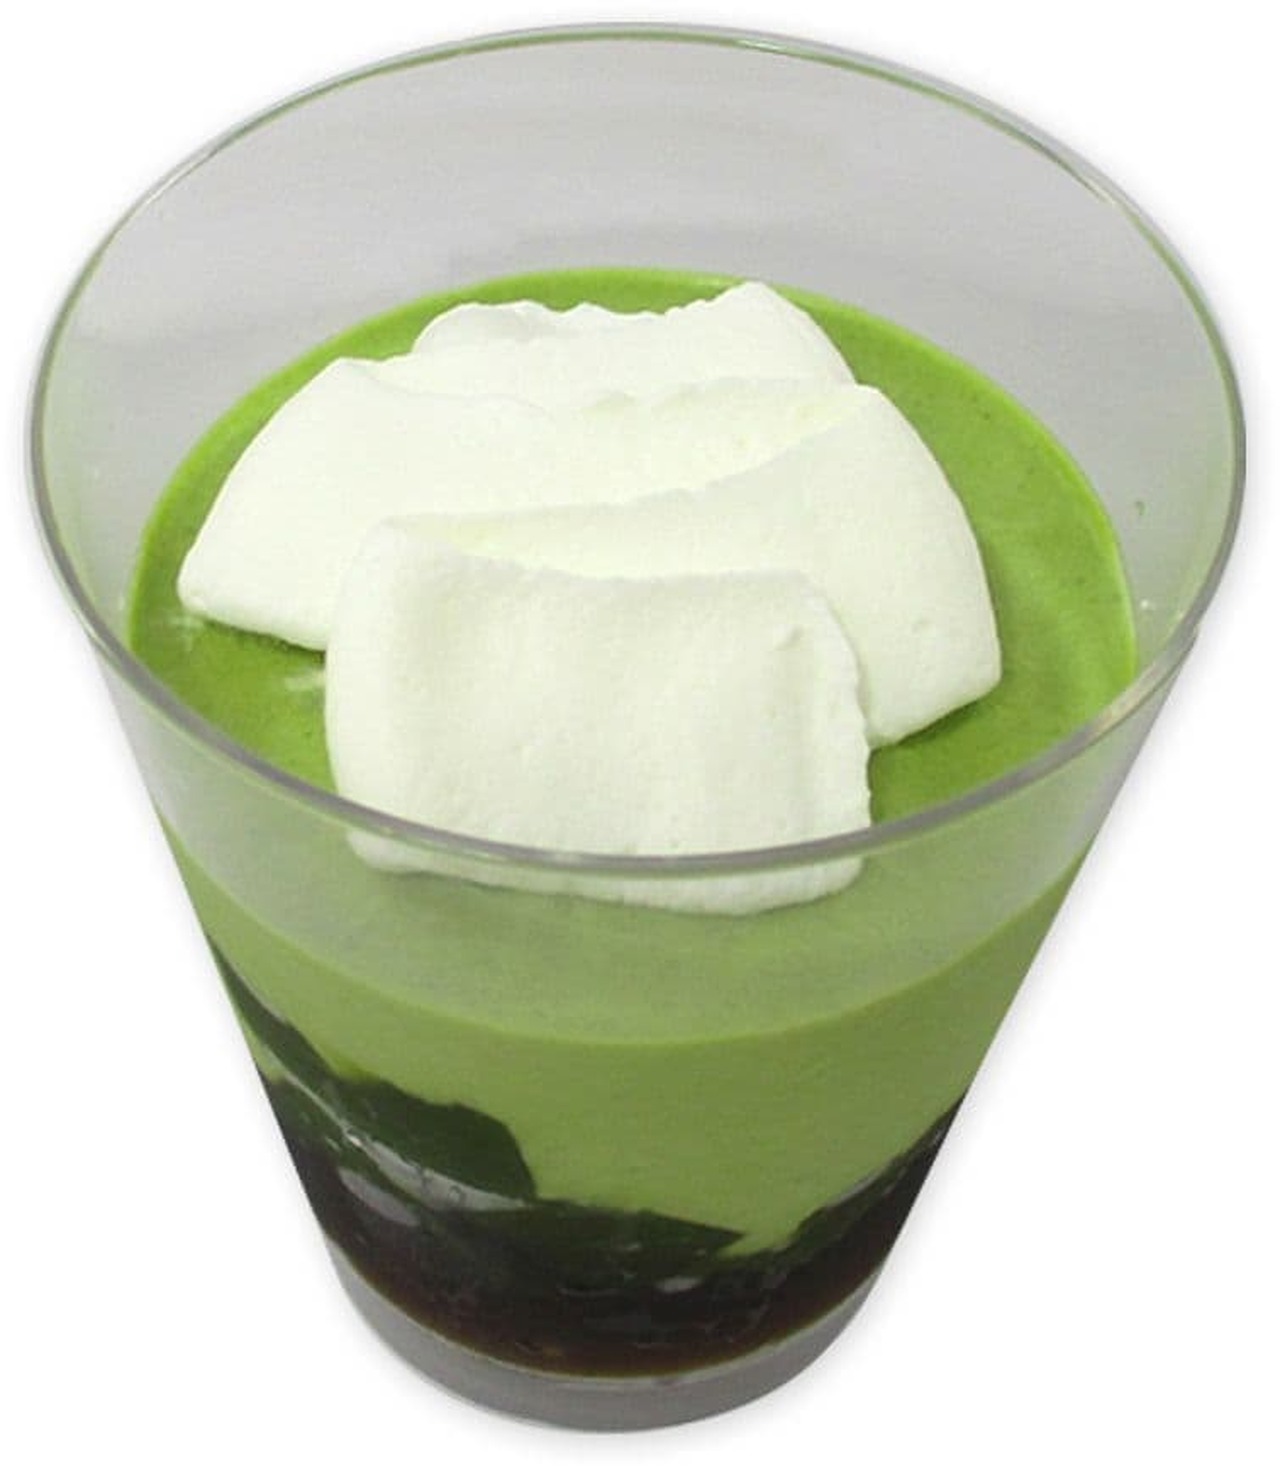 7-ELEVEN "Warabimochi Uji Matcha Latte Jelly"